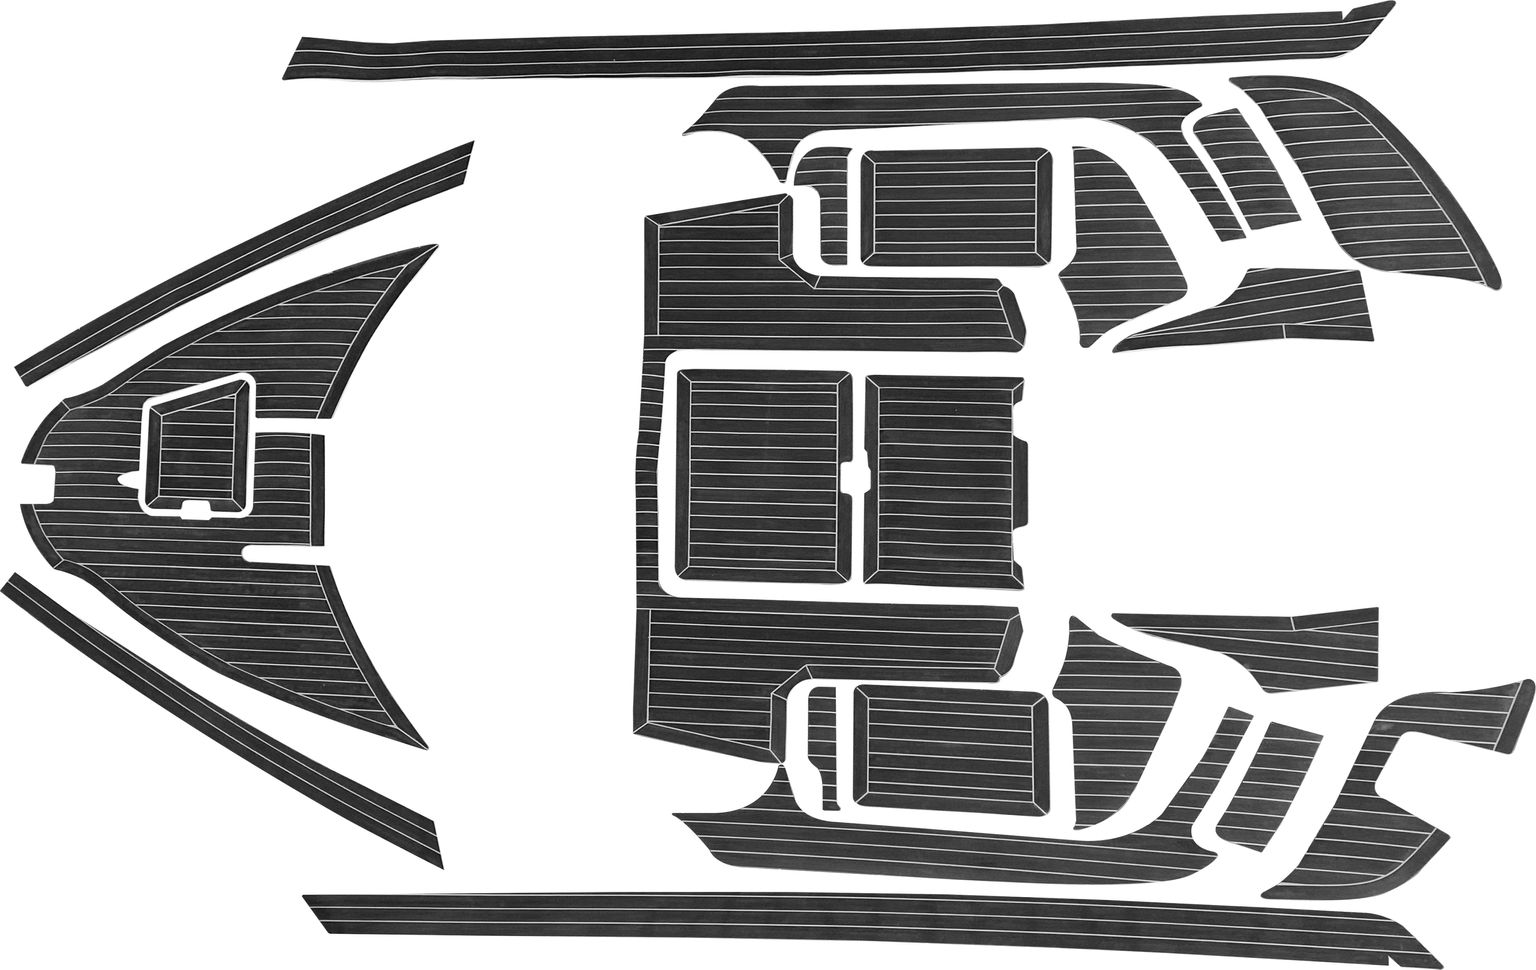 Комплект палубного покрытия для Yamaha CR-27, тик черный, белая полоса, с обкладкой, Marine Rocket teak_CR27_black_2 комплект палубного покрытия для феникс 530ht тик классический с обкладкой marine rocket teak 530ht classic 2